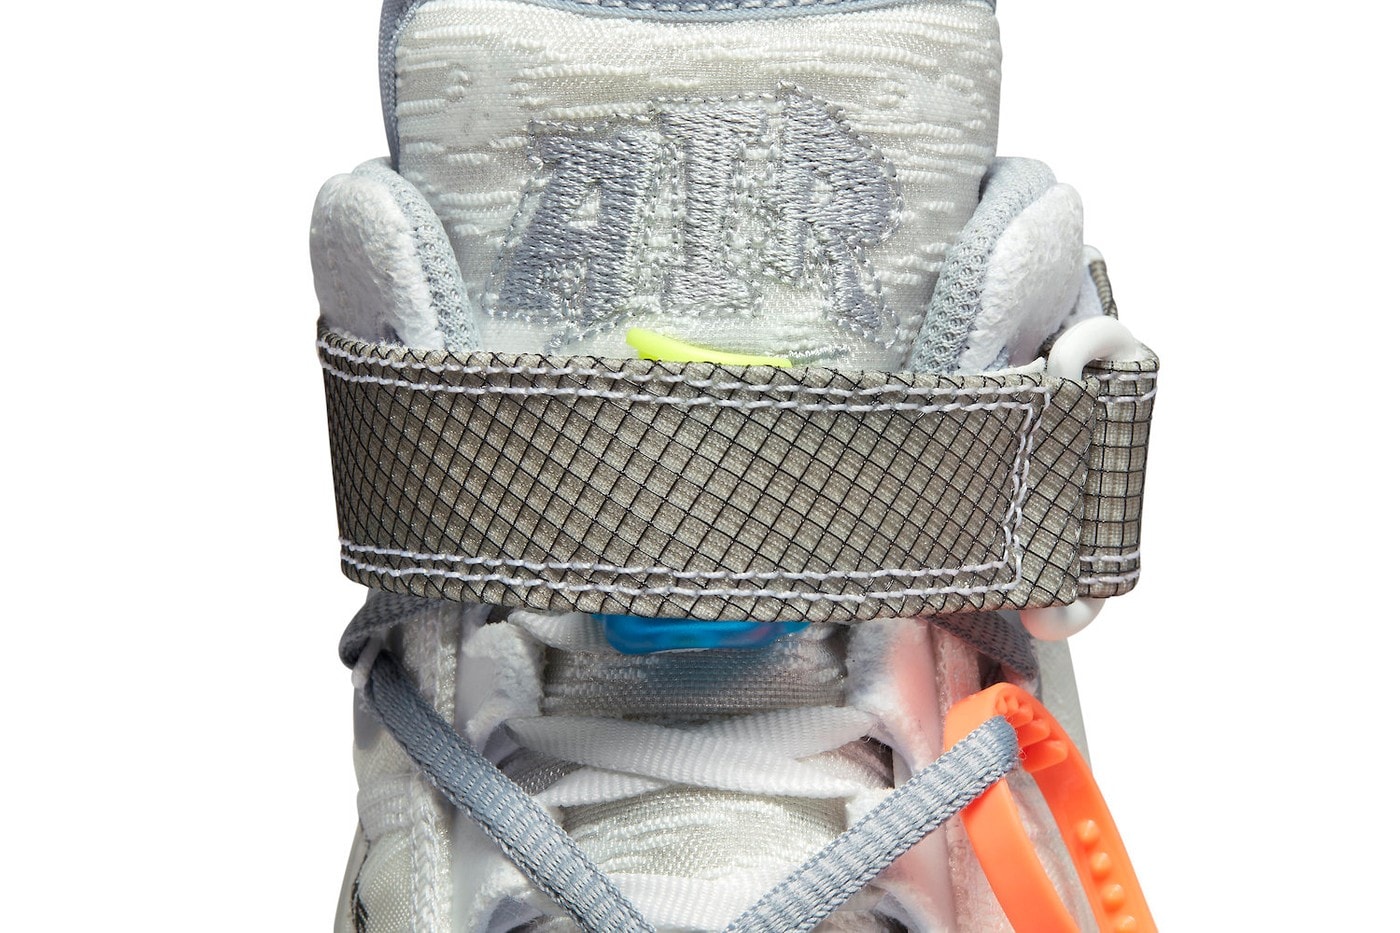 Off-White™ x Nike Air Force 1 Mid「White」联名鞋款官方圖释出